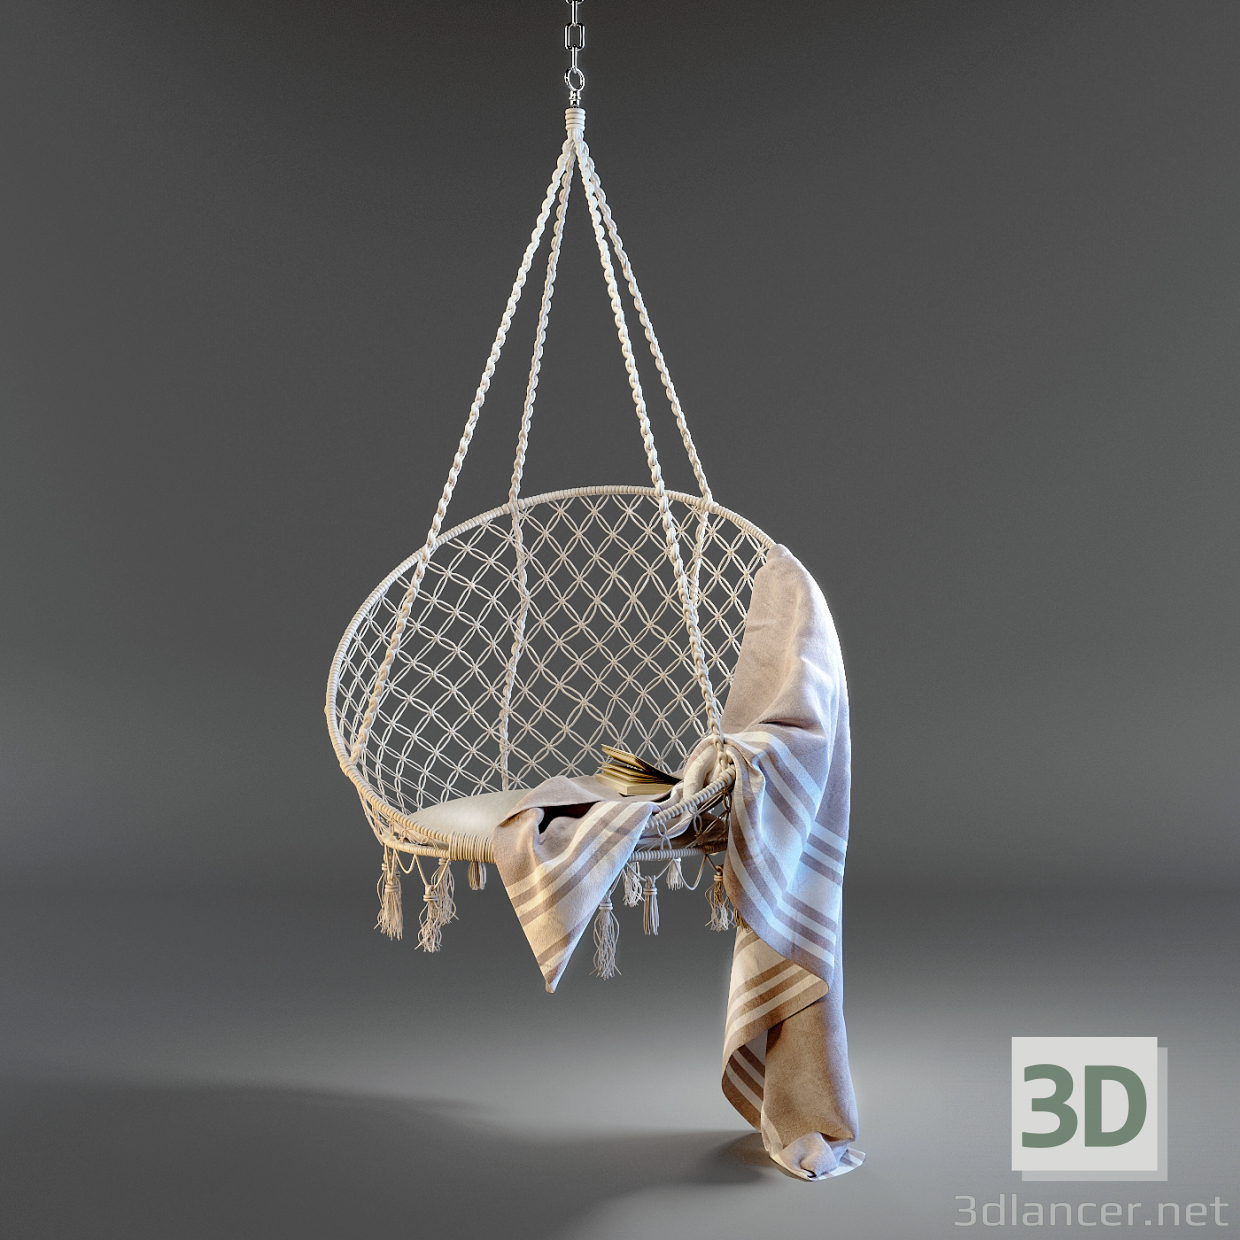 Silla hamaca colgante 3D modelo Compro - render